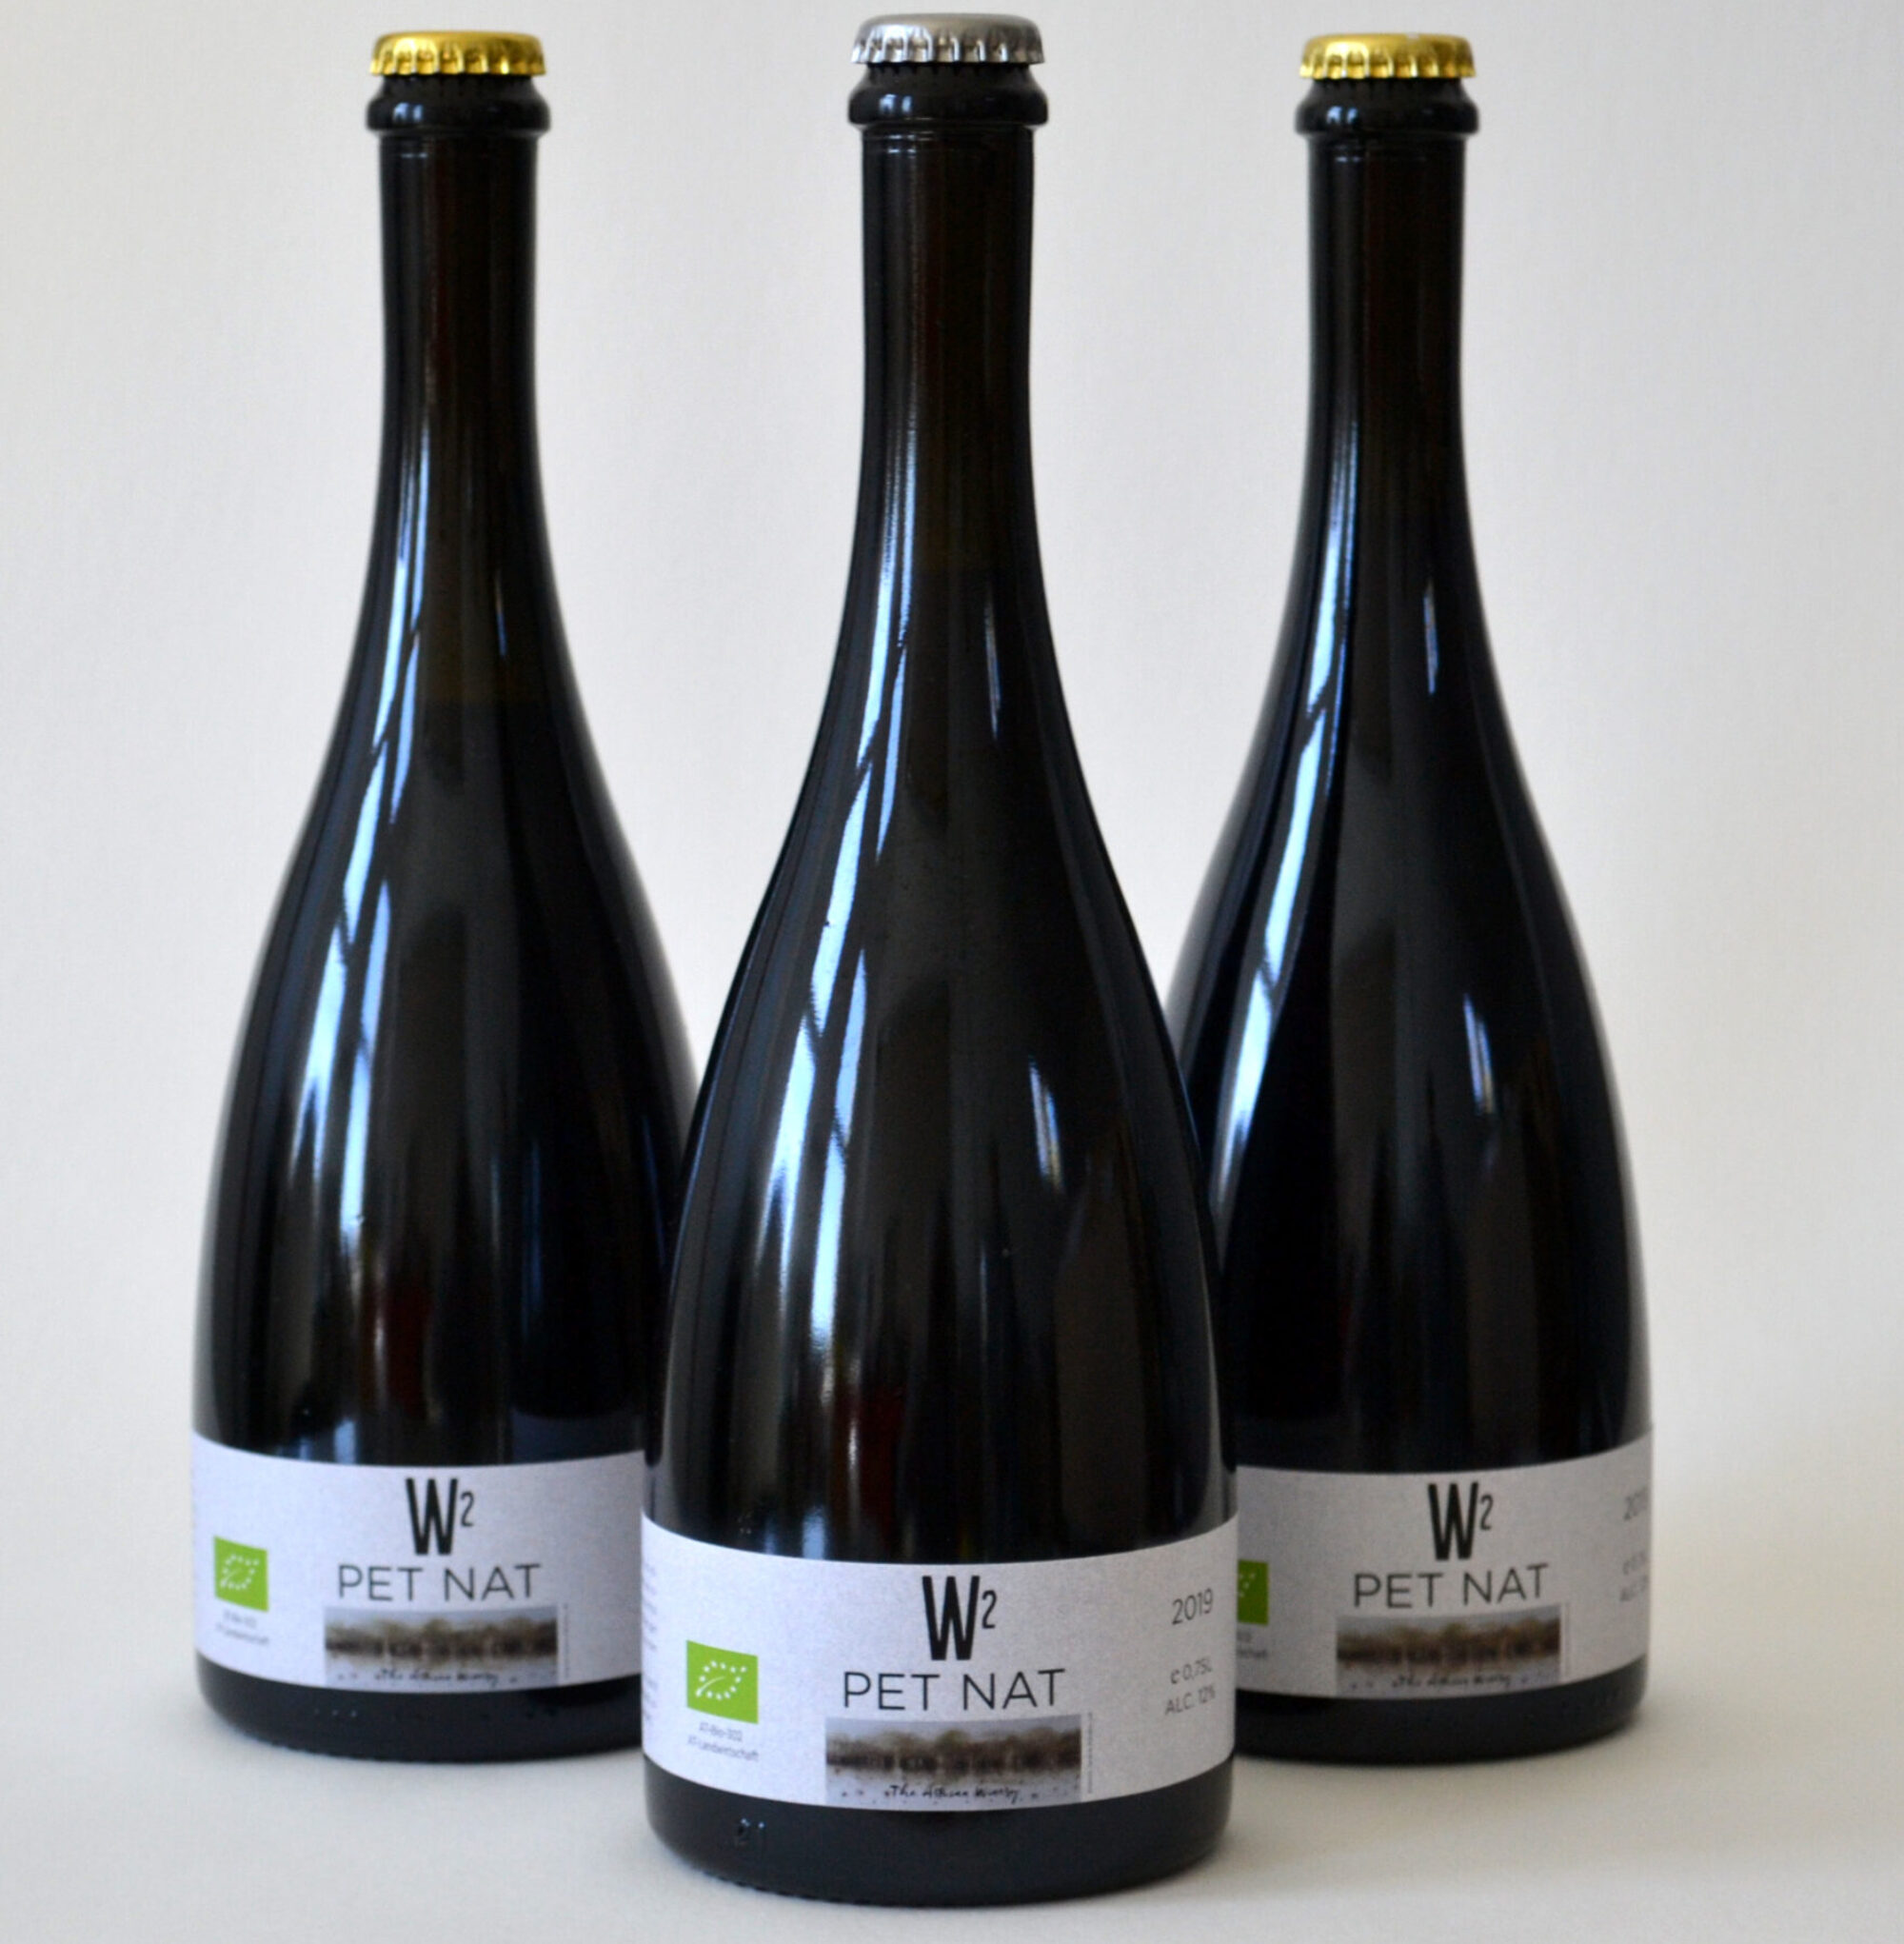 W2-BIO Weinbau Waltl